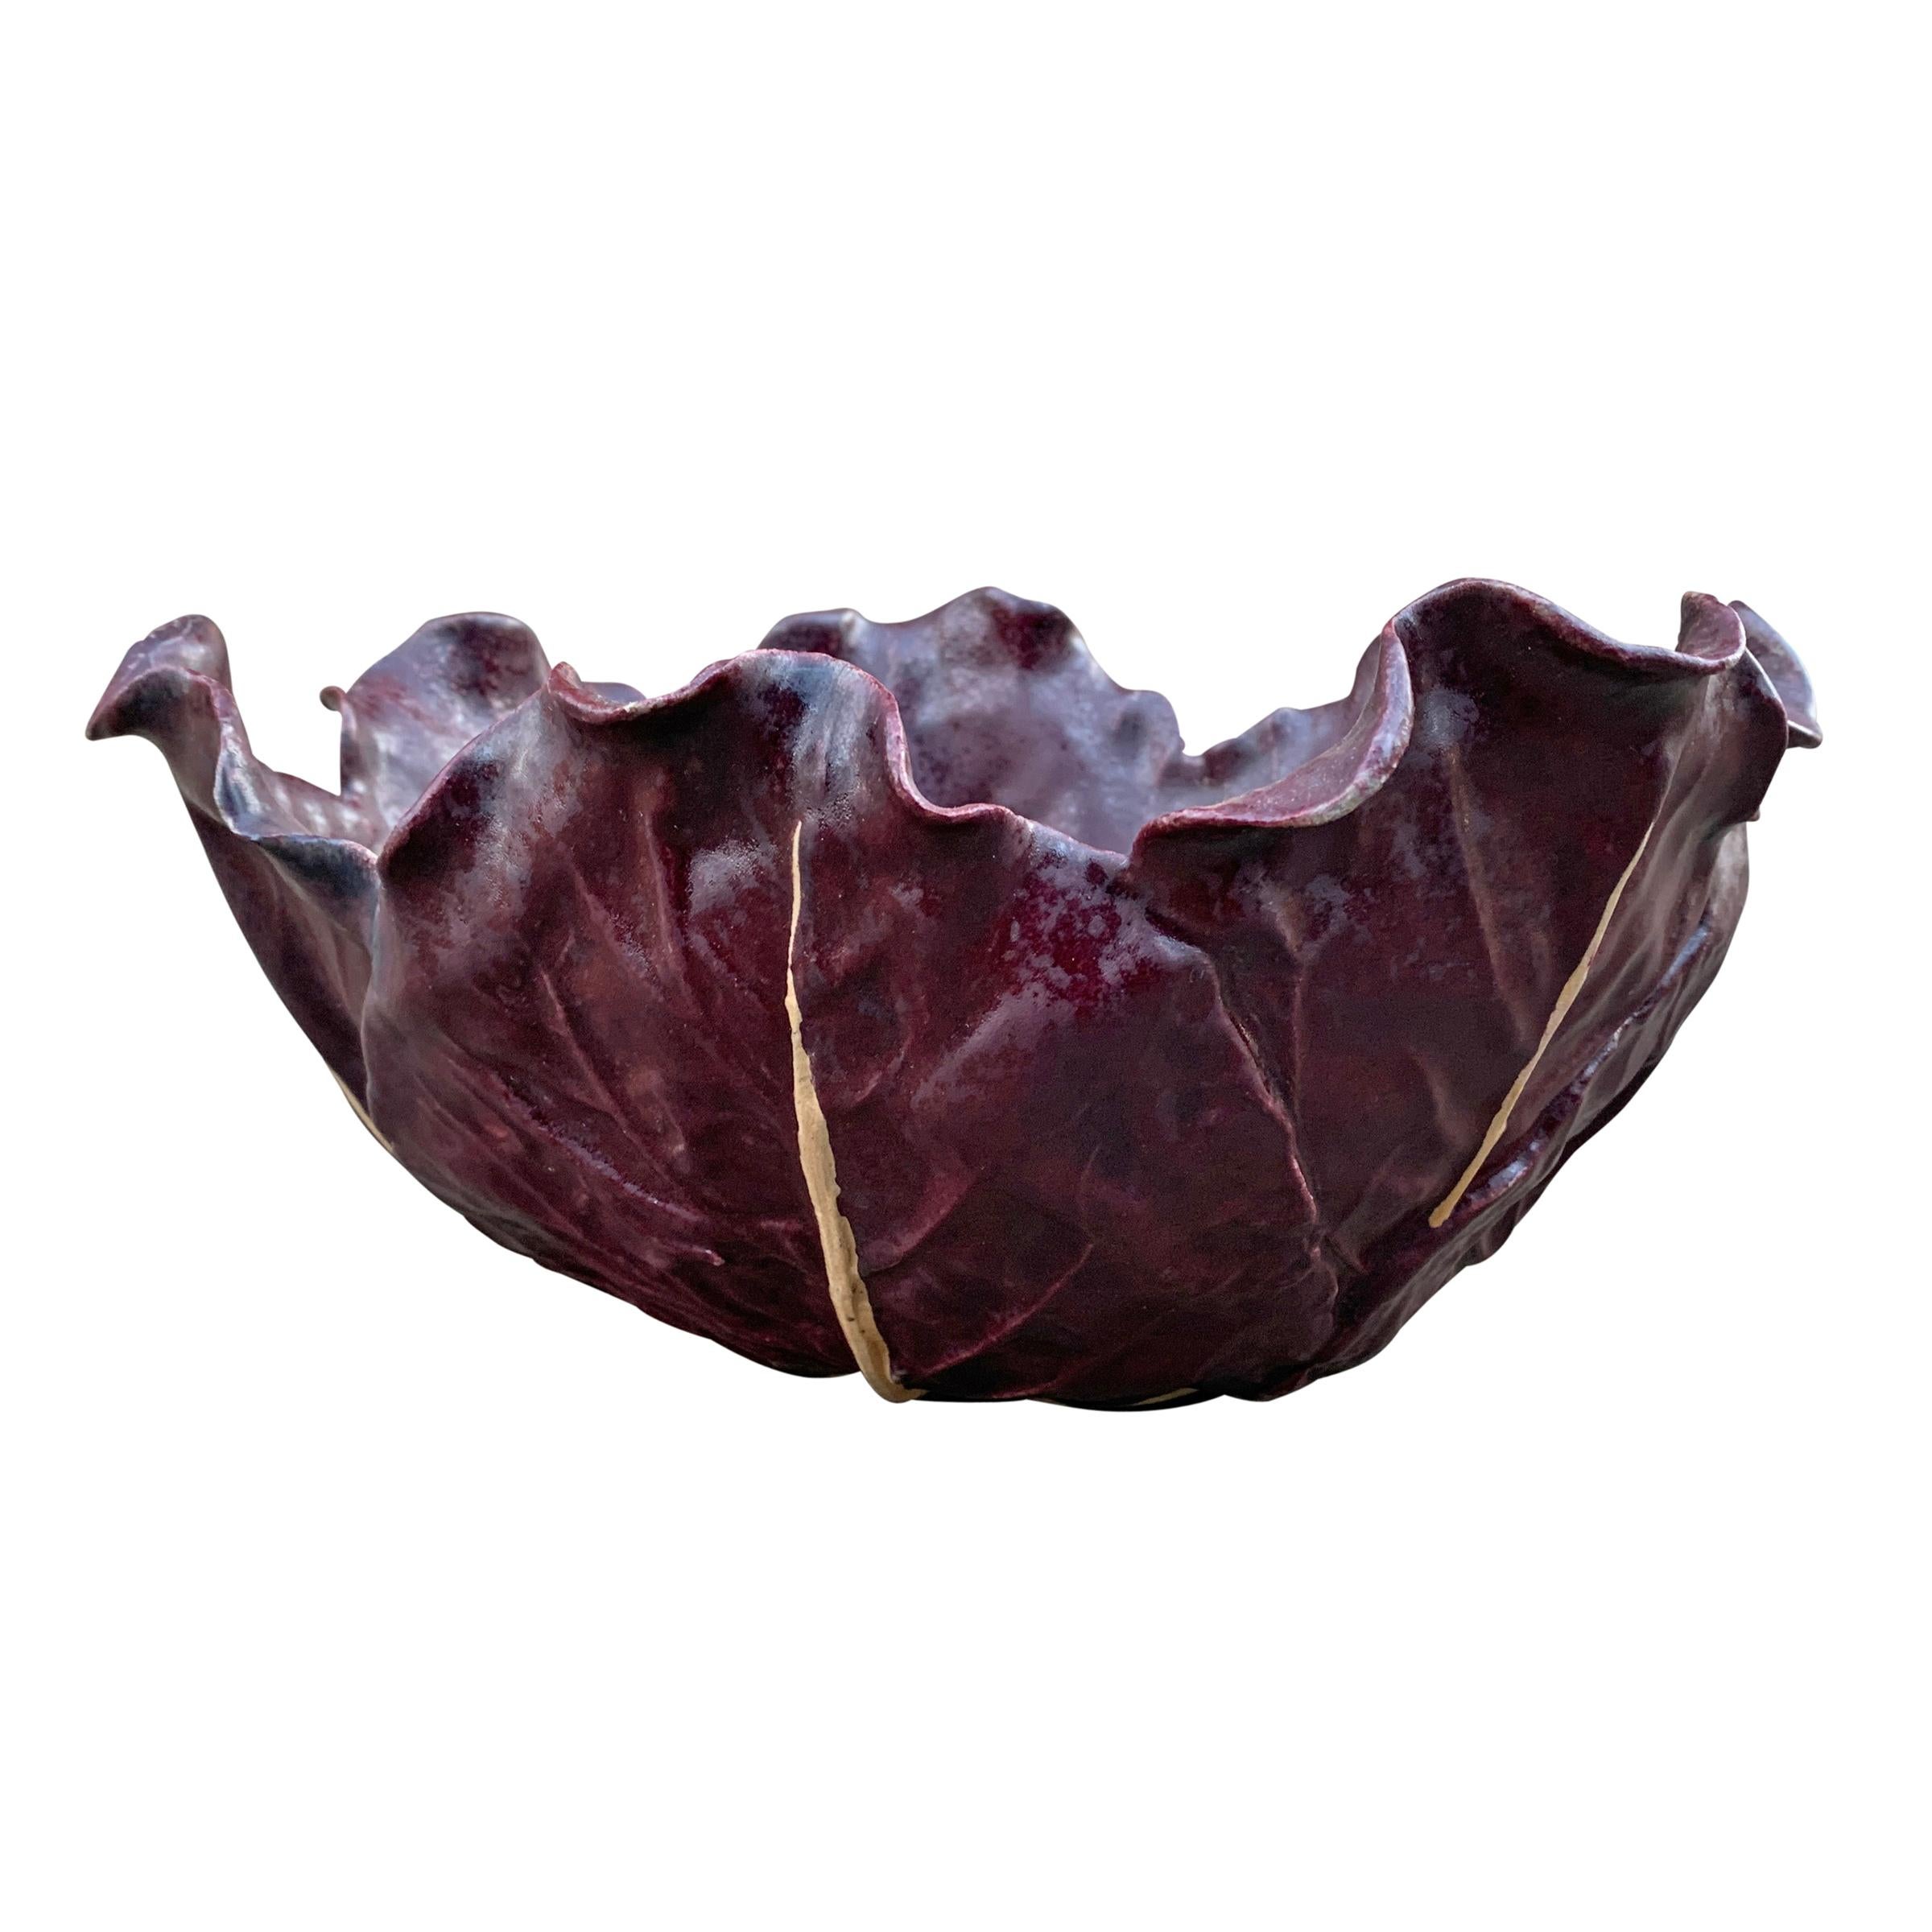 cabbage bowl vintage